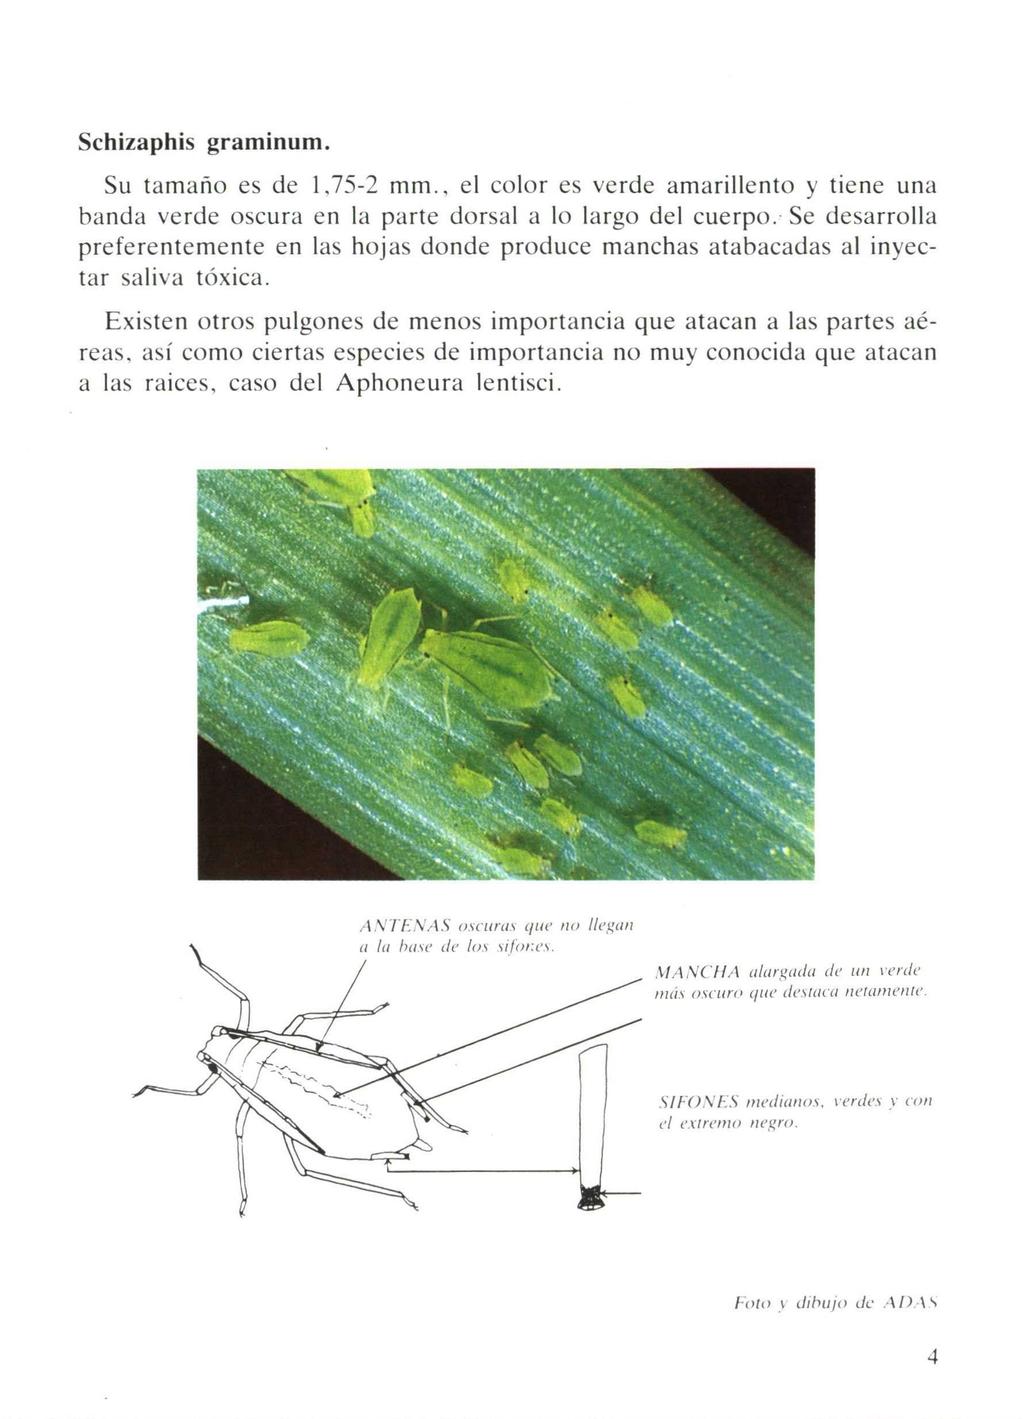 Schizaphis graminum. Su tamaño es de 1,75-2 mm., el color es verde amarillento y tiene una banda verde oscura en la parte dorsal a lo largo del cuerpo.